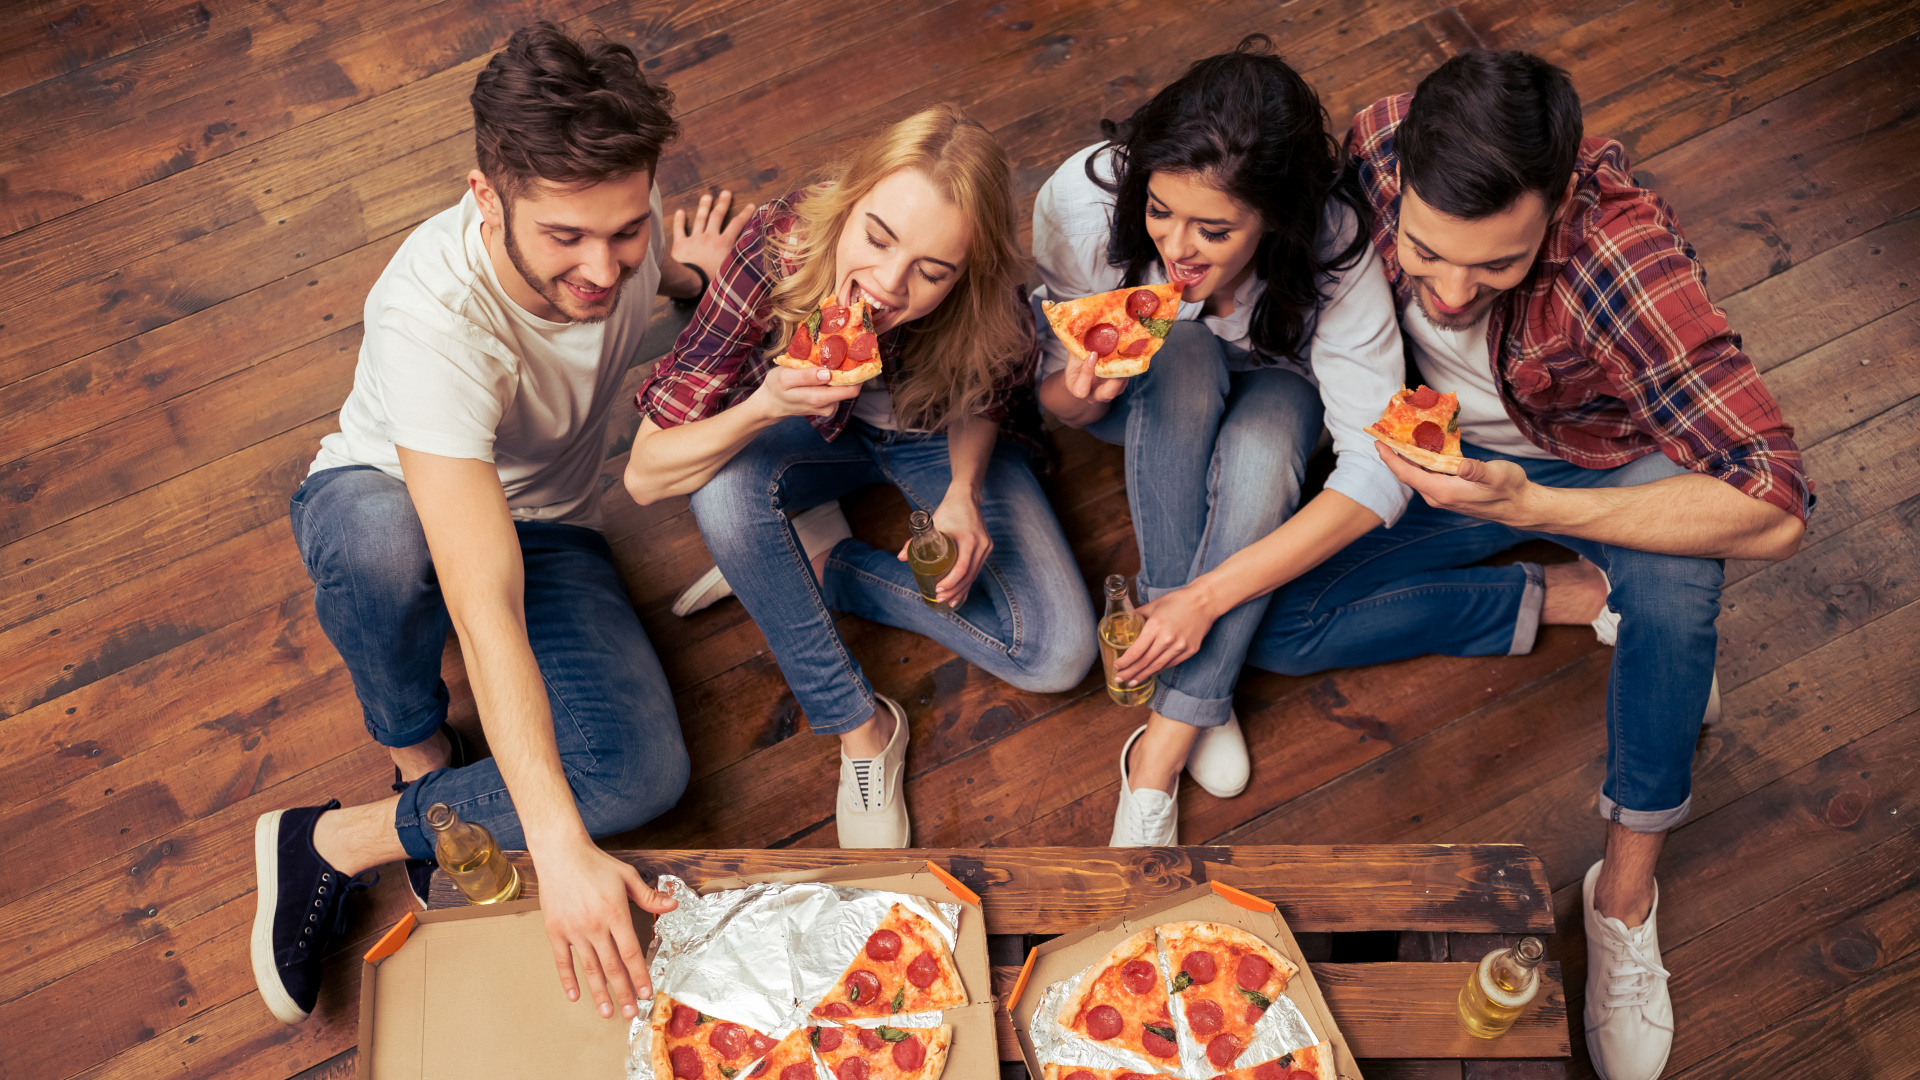 披萨, 意大利菜, 吃, 乐趣, 食品 壁纸 1920x1080 允许